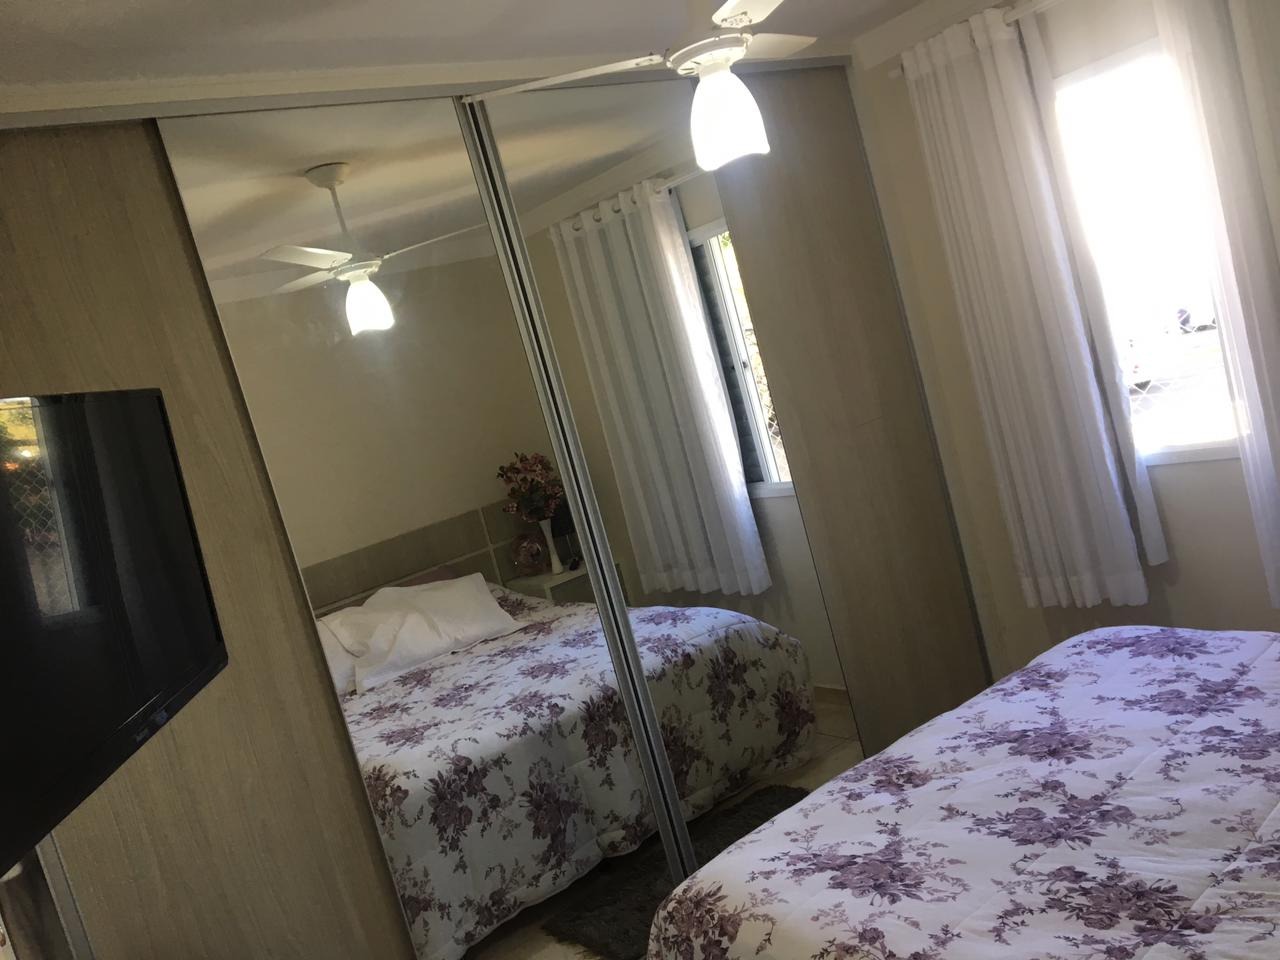 Apartamento à venda, 2 quartos, 1 vaga, no bairro Jardim Nova Iguaçu em Piracicaba - SP